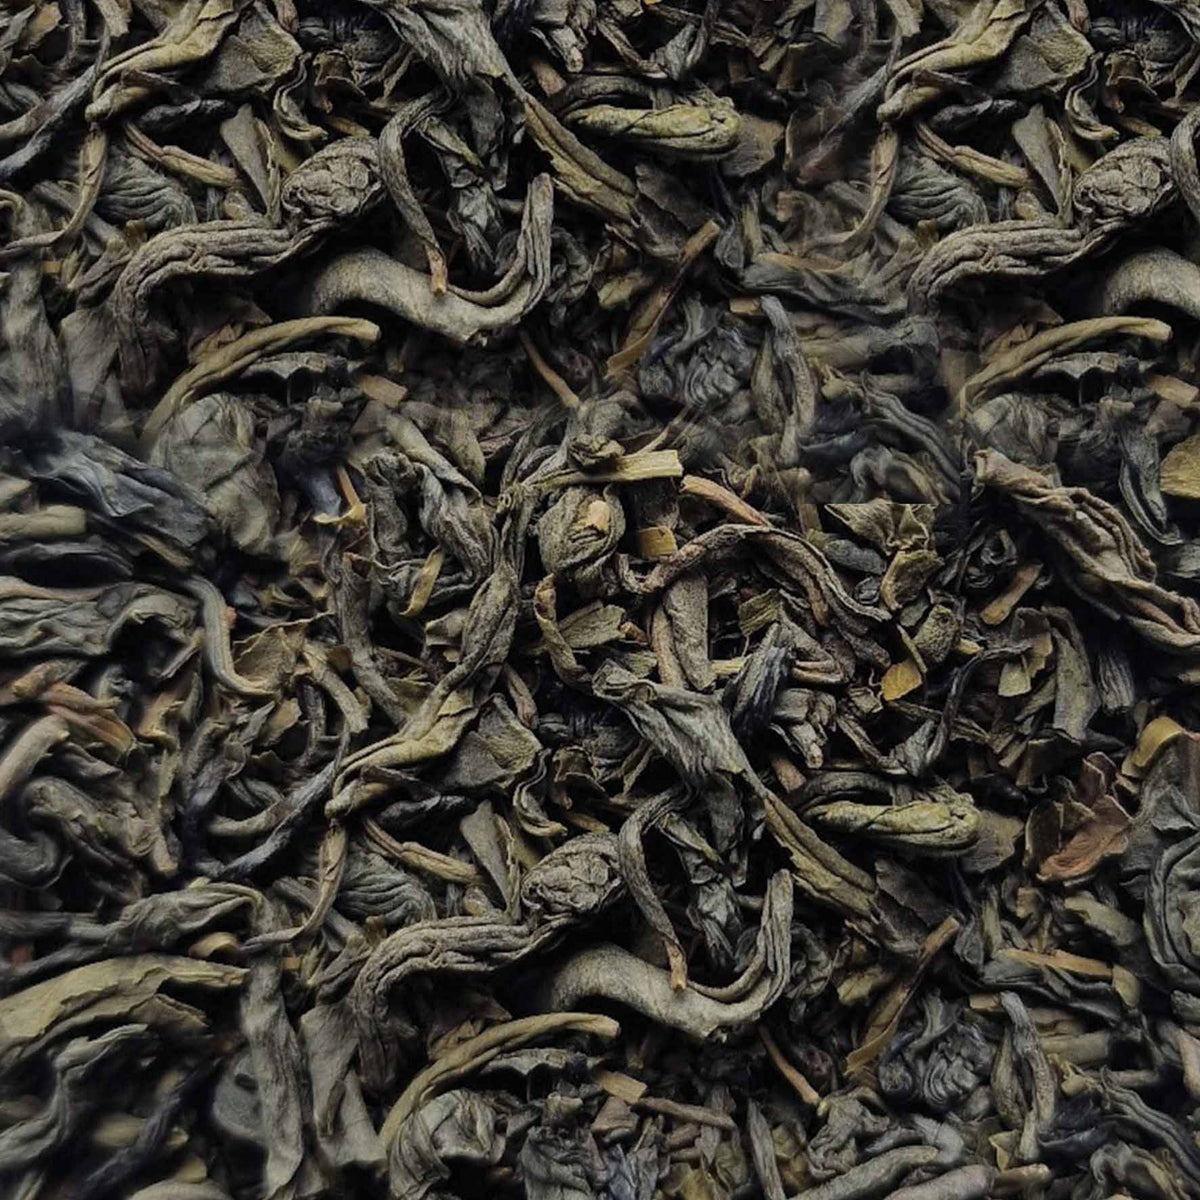 Organic Jasmine Gold Dragon Green Loose Leaf Tea - tea leaves